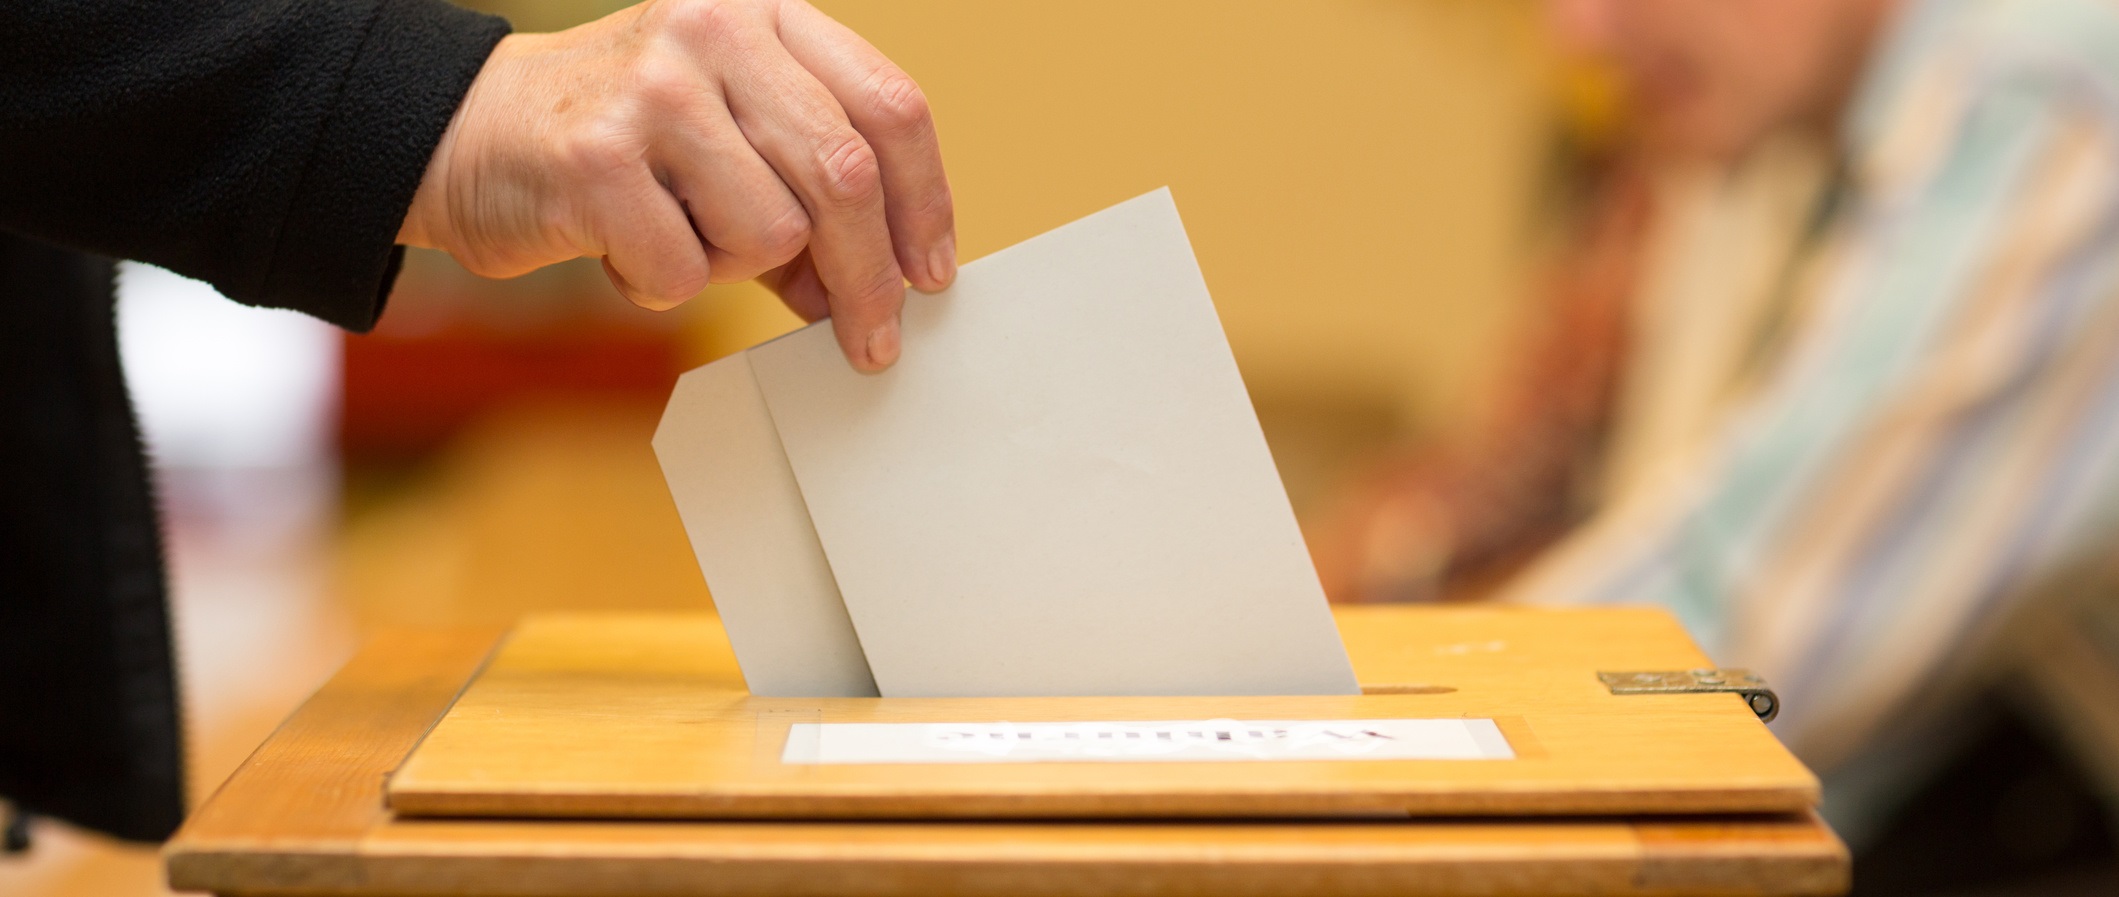 Yerel seçim takvimi Resmi Gazete’de yayımlandı: Hangi gün oy verilecek?